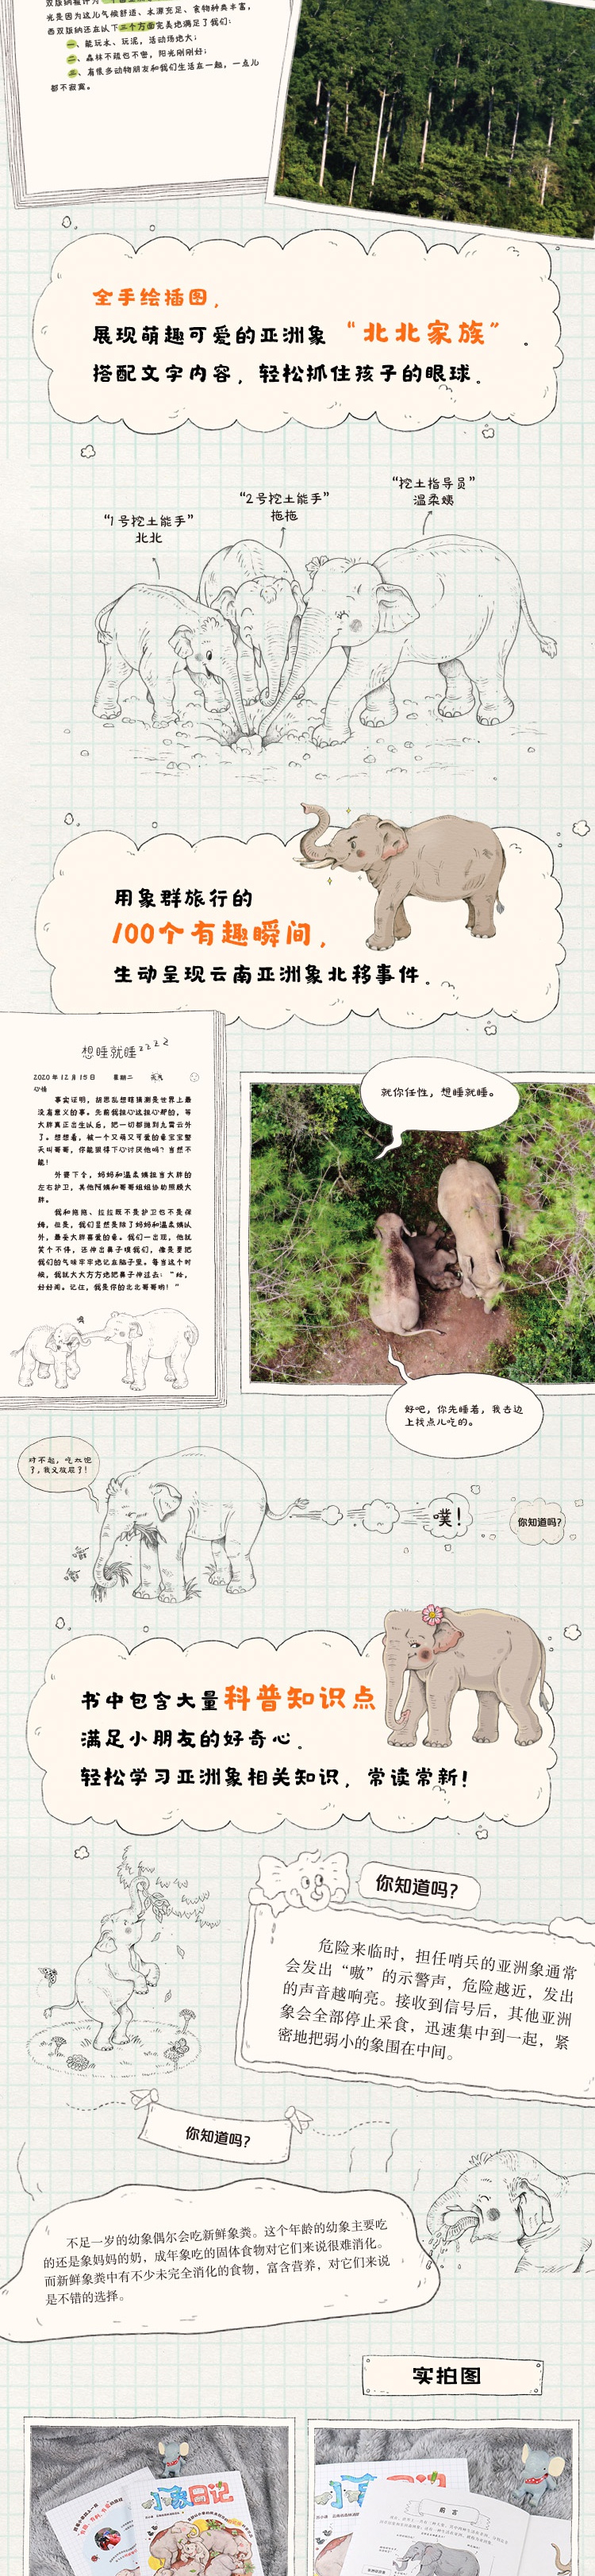 小象日记首部以小象视角创作的日记体科普读物